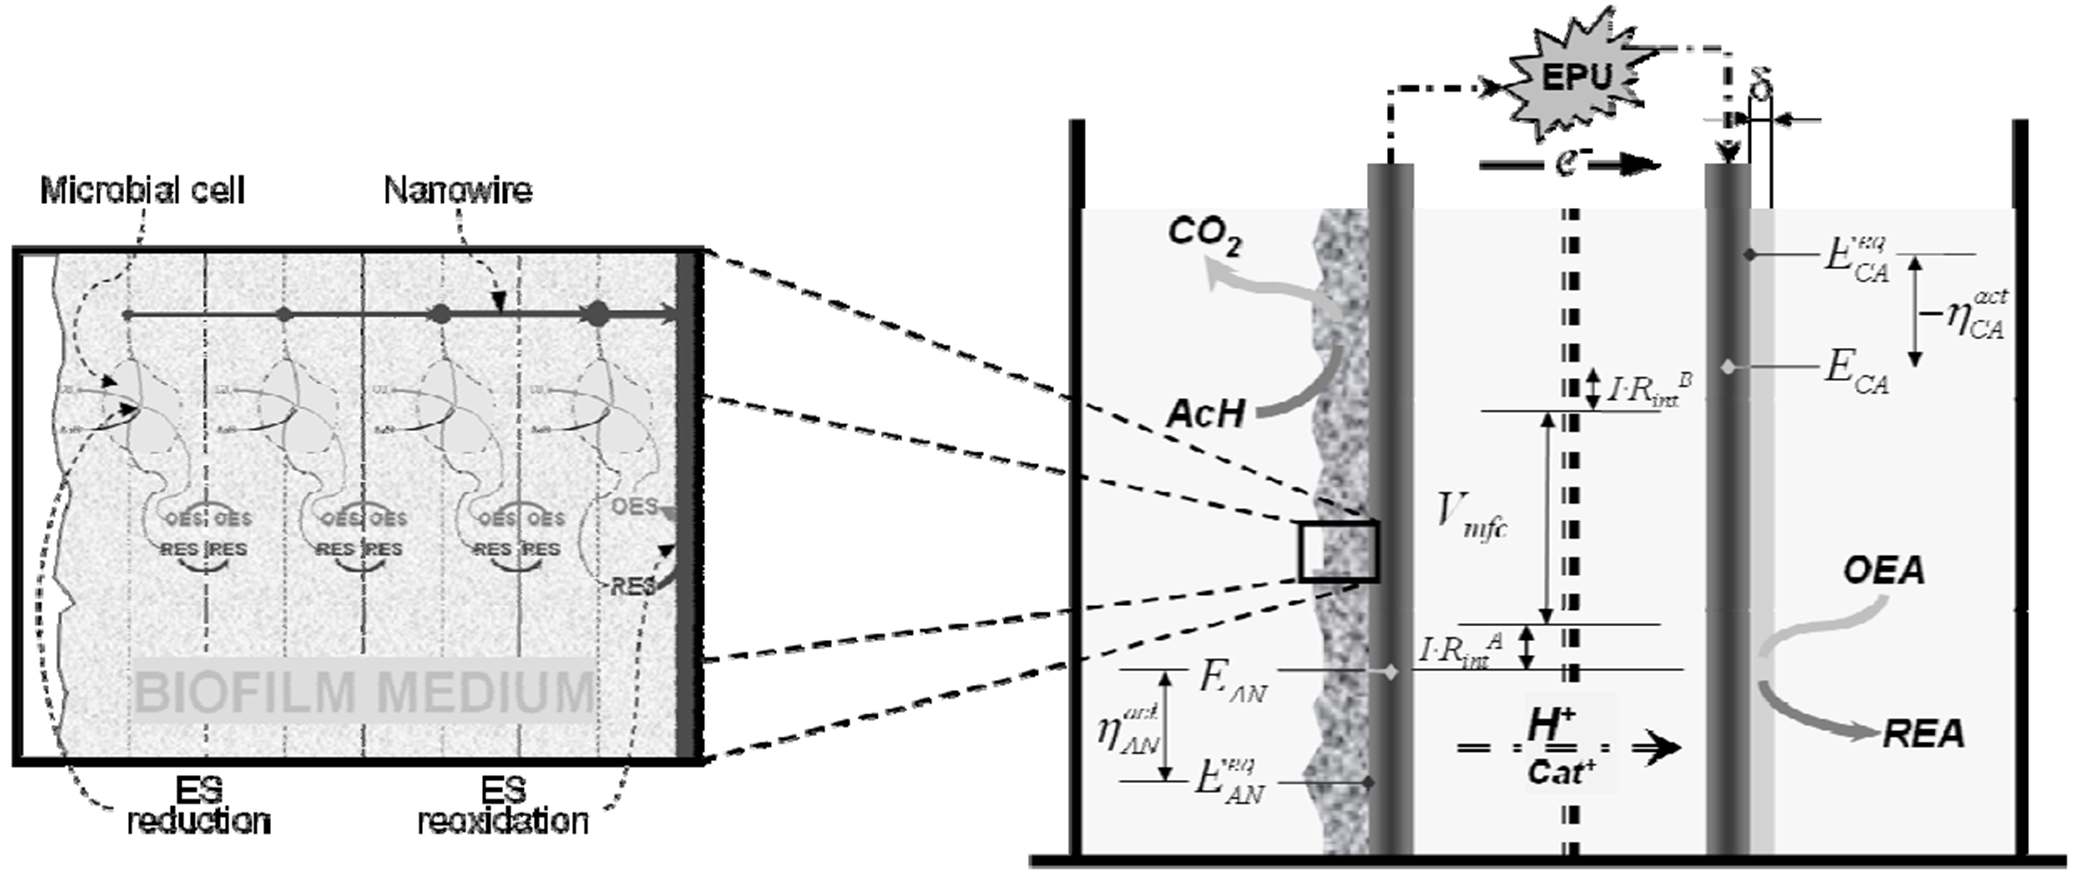 그림 3-117 아세트산의 생물학적 산화반응과 두 가지 전자 전달 메커니즘이 고려된 미생물연료전지 모델 모식도